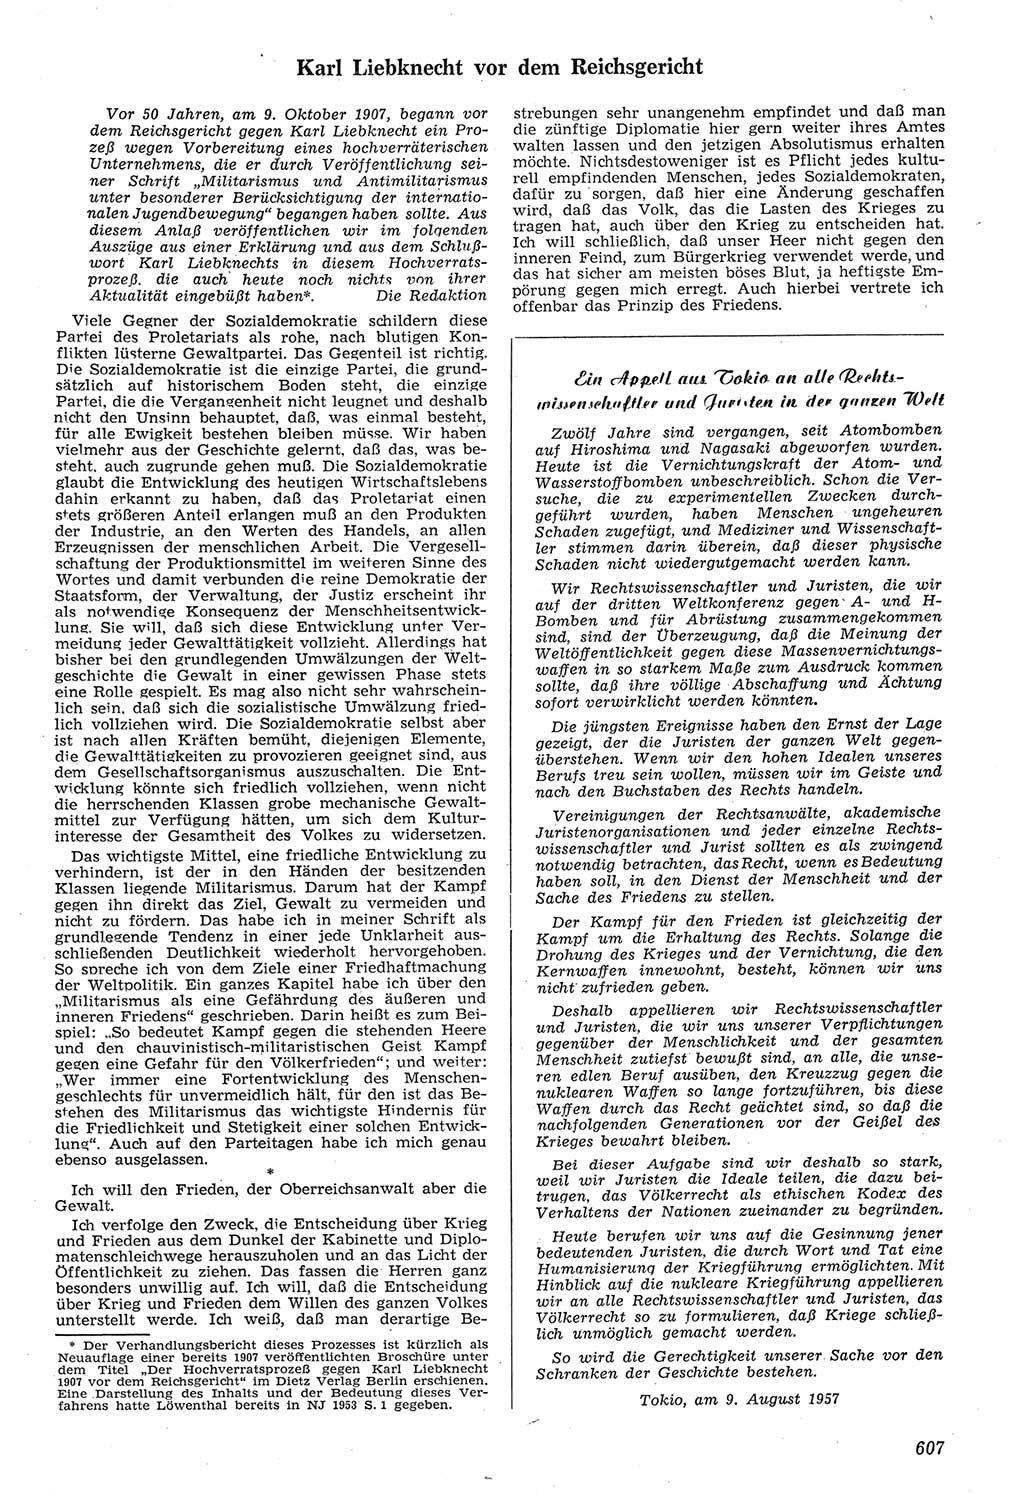 Neue Justiz (NJ), Zeitschrift für Recht und Rechtswissenschaft [Deutsche Demokratische Republik (DDR)], 11. Jahrgang 1957, Seite 607 (NJ DDR 1957, S. 607)